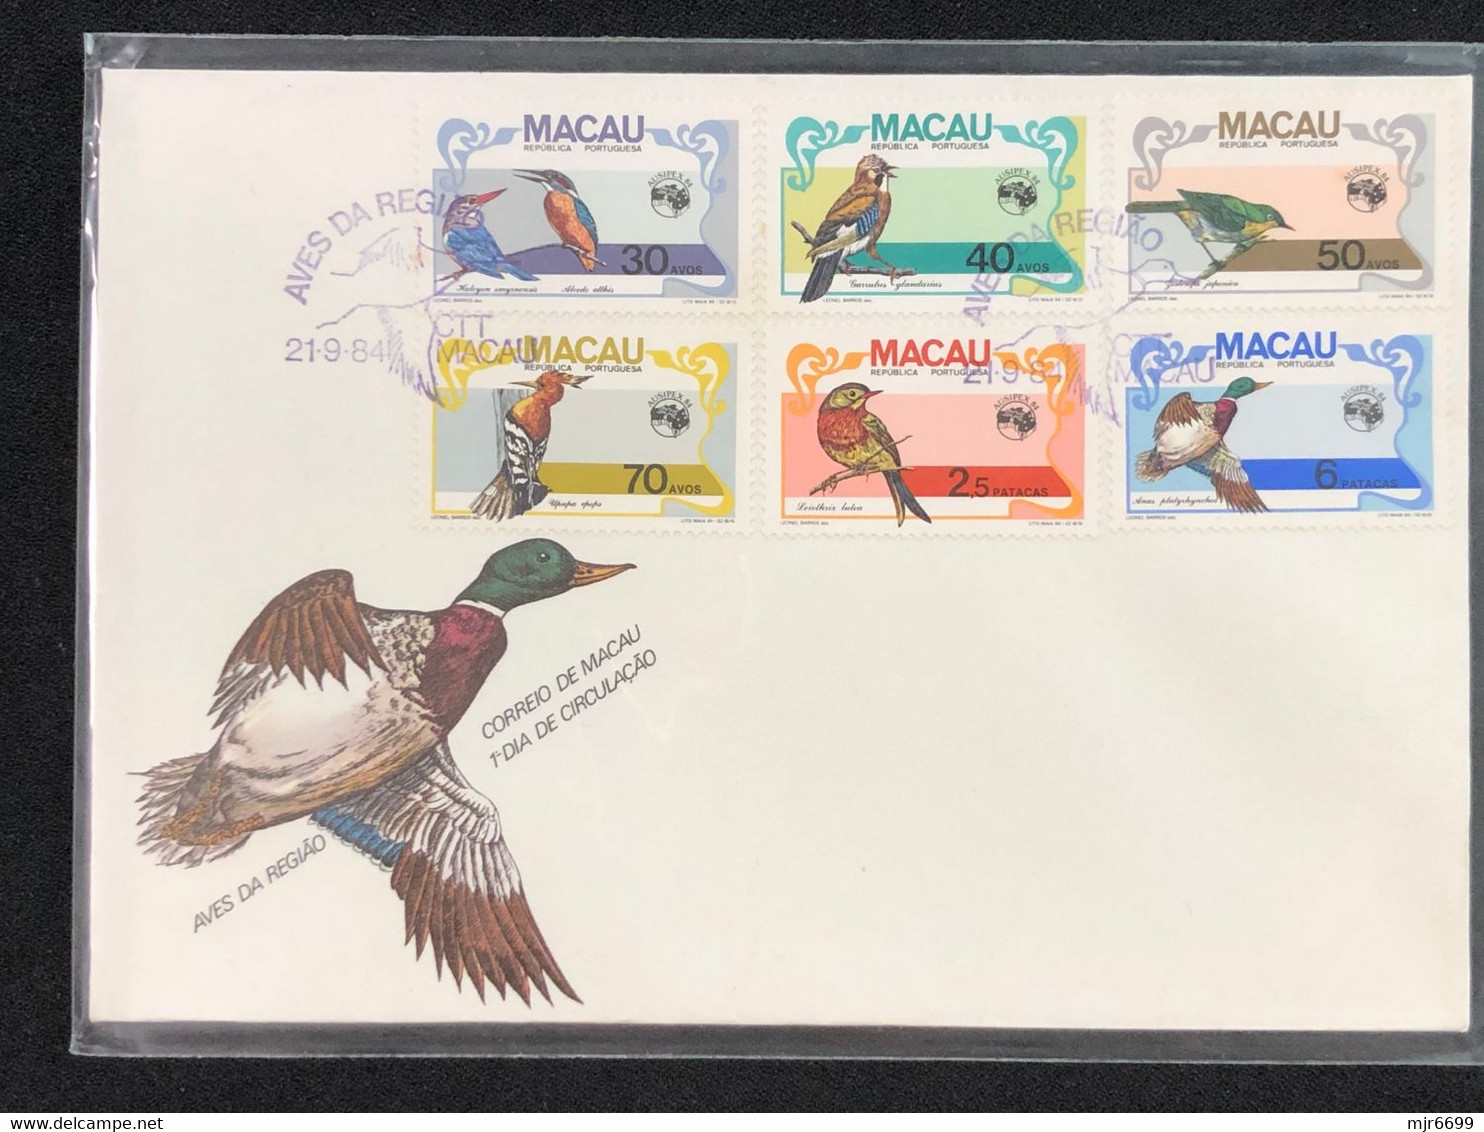 MACAU 1984 REGIONAL BIRDS FDC - FDC